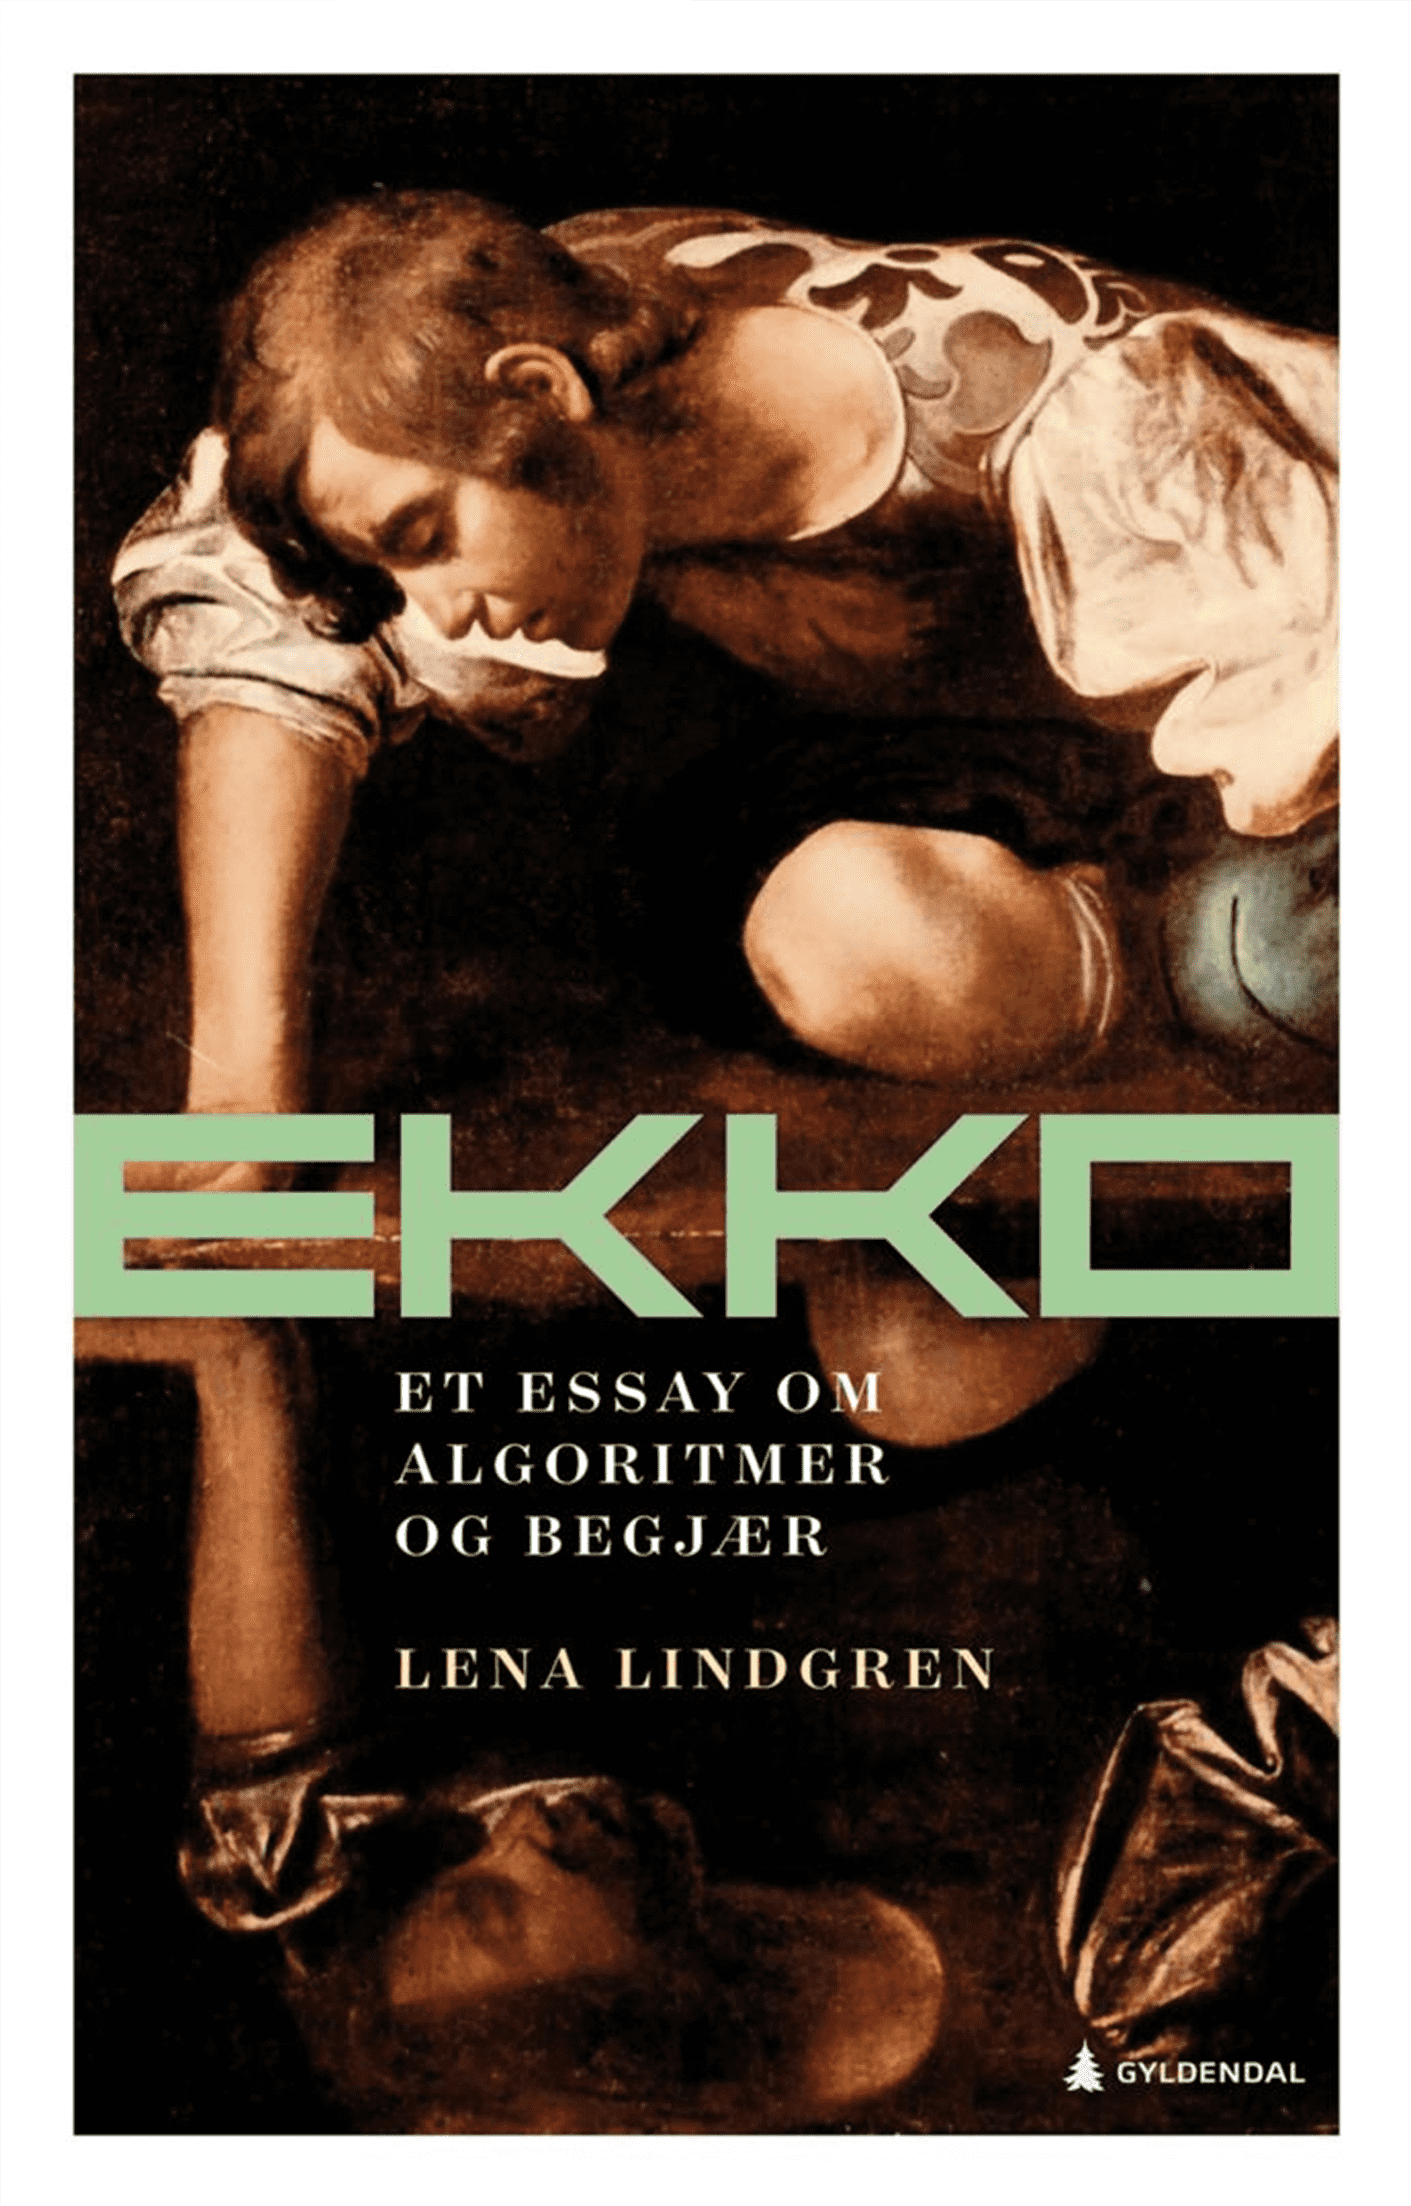 Ekko. Et essay om algoritmer og begjaer (2021) Lena Lindgren